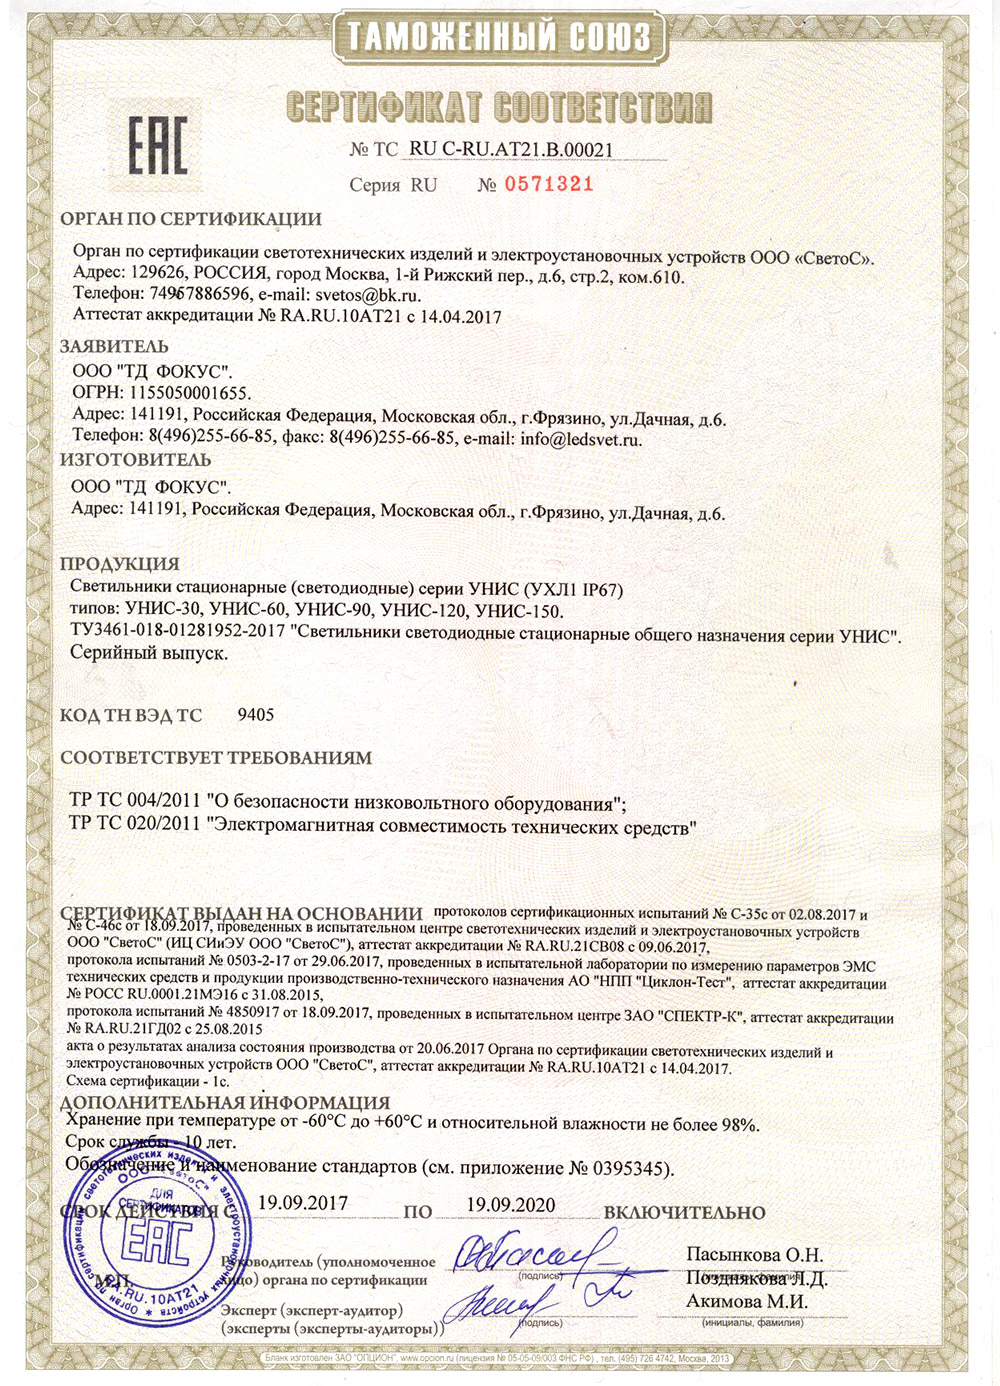 Сертификат соответствия Таможенного союза на светильники УНИС